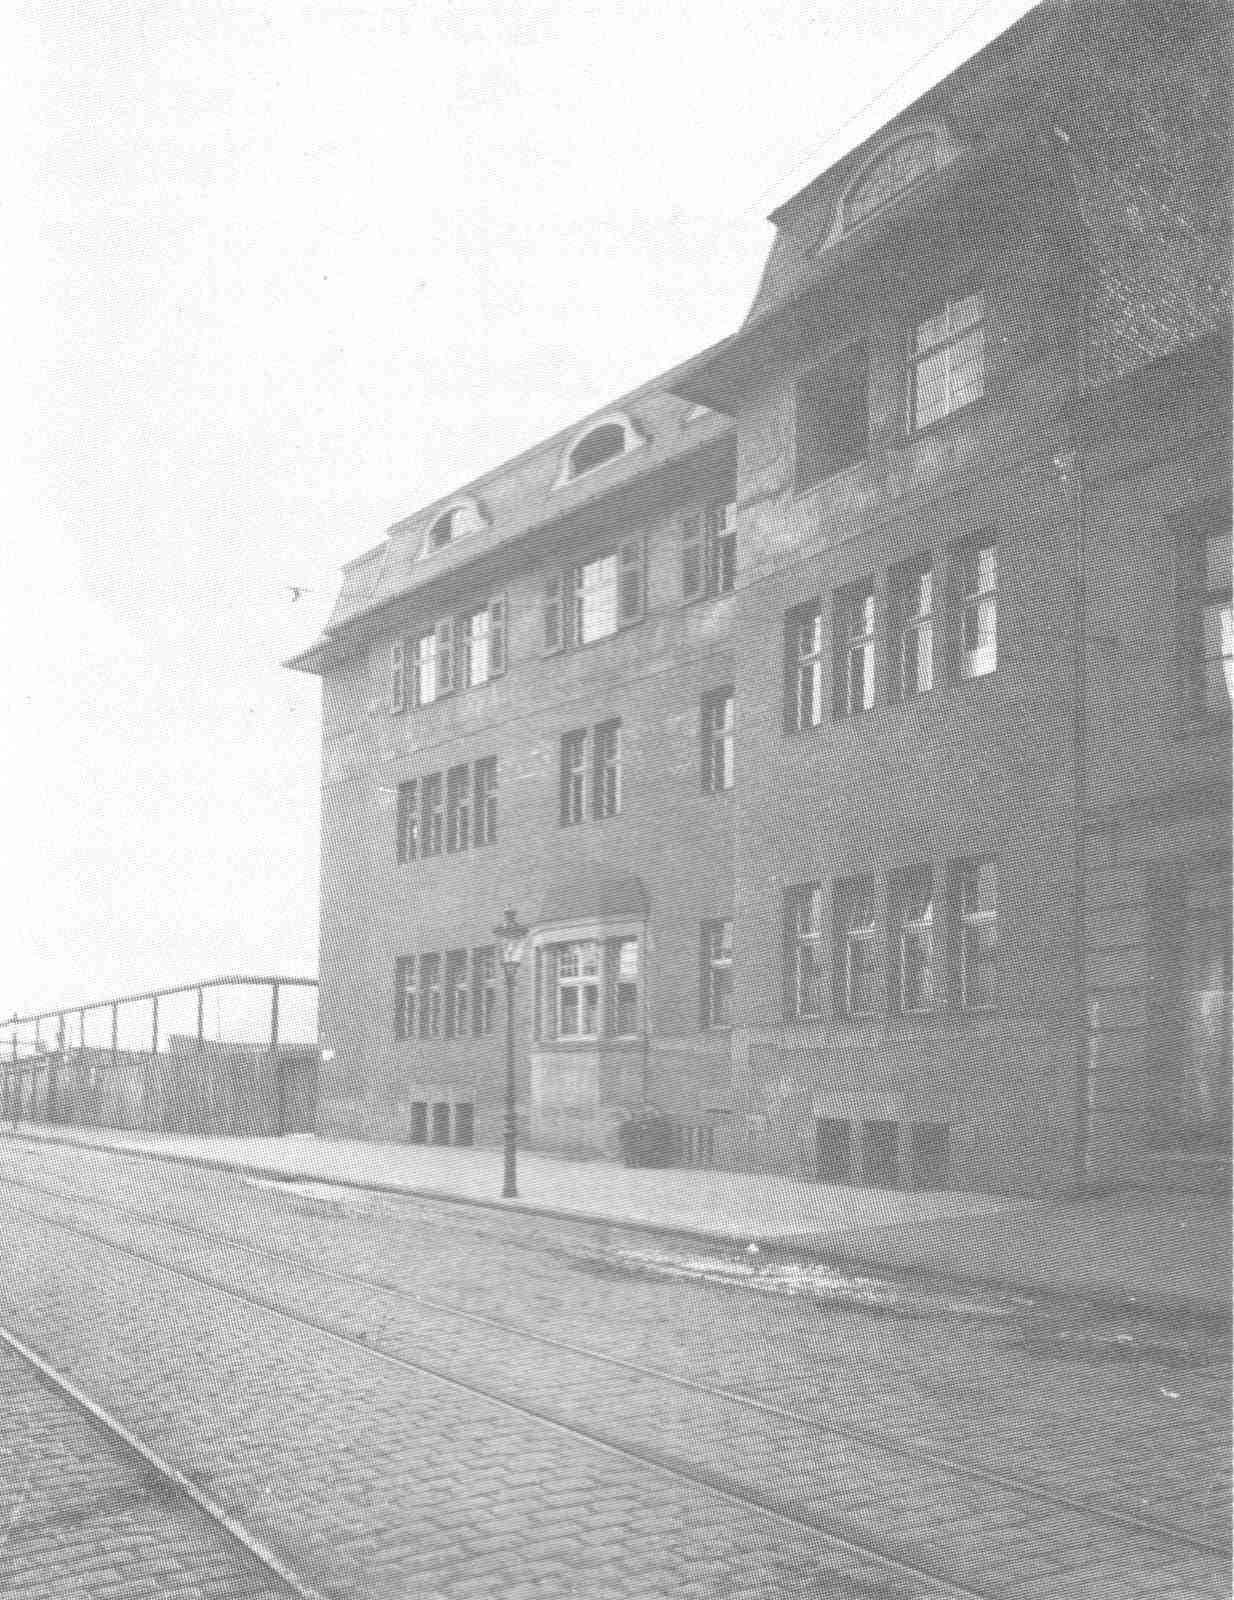 D/NRW/HA/Wehringhausen/WehringhauserStrasse/Stadtwerke/190xxxxx_Direktionsgebaeude_der_Stadtwerke_Wehringhauser_Strasse_105_etwa_um_1906